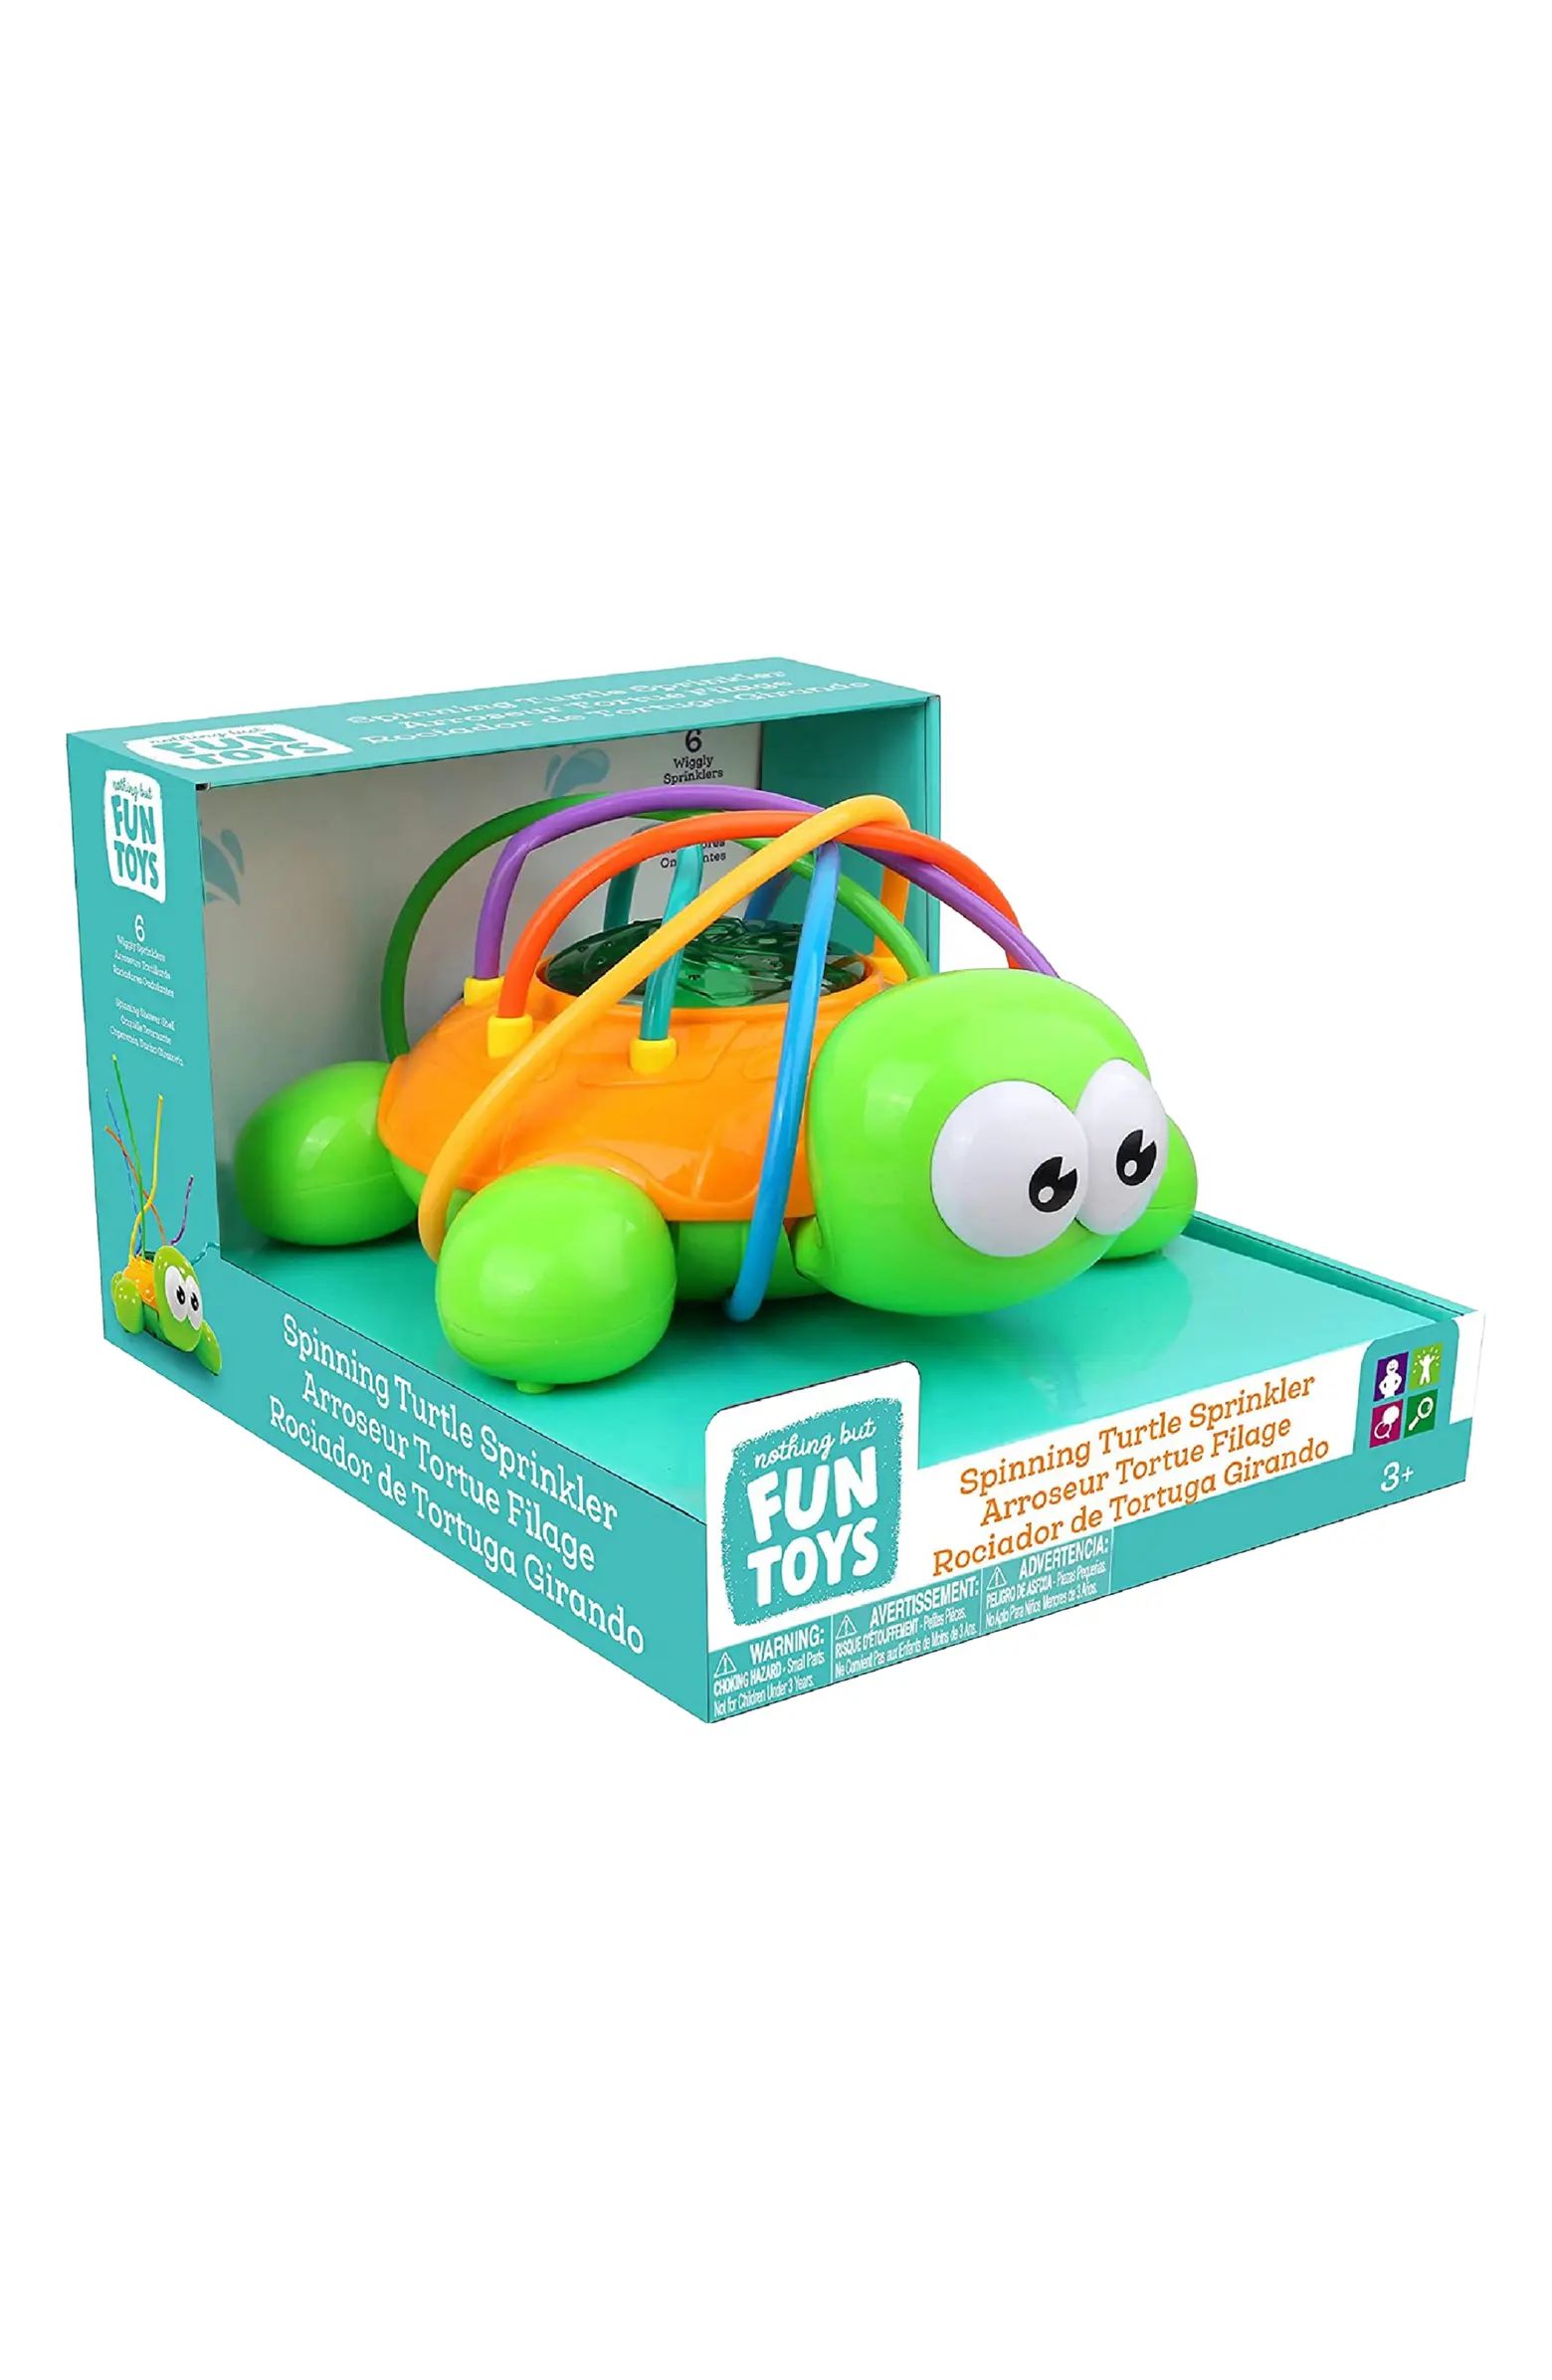 Spinning Turtle Sprinkler Toy | Nordstrom